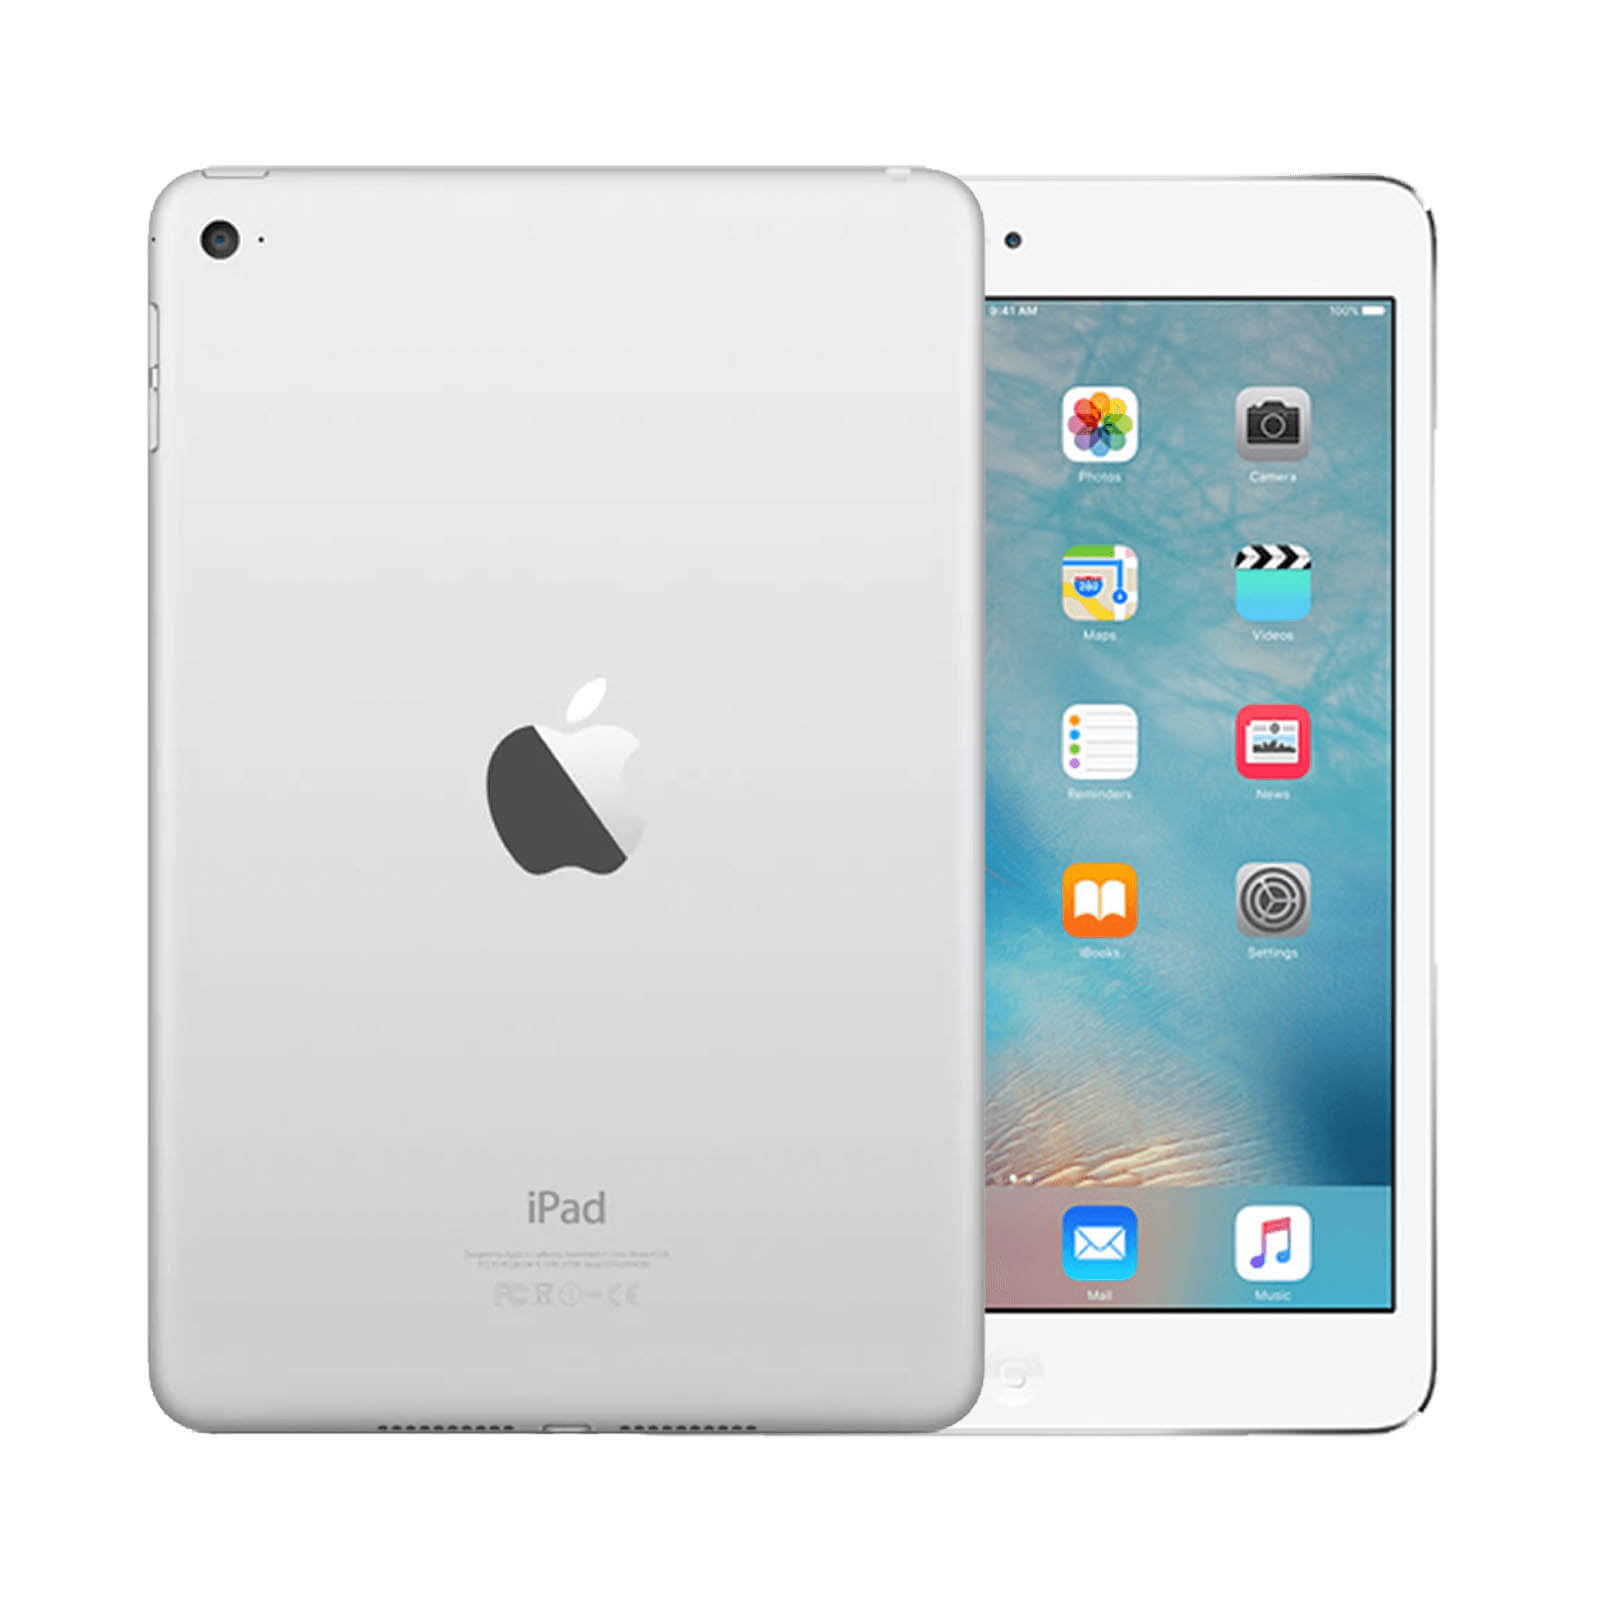 Apple iPad Mini 4 128GB Silver WiFi - Good 128GB Silver Good